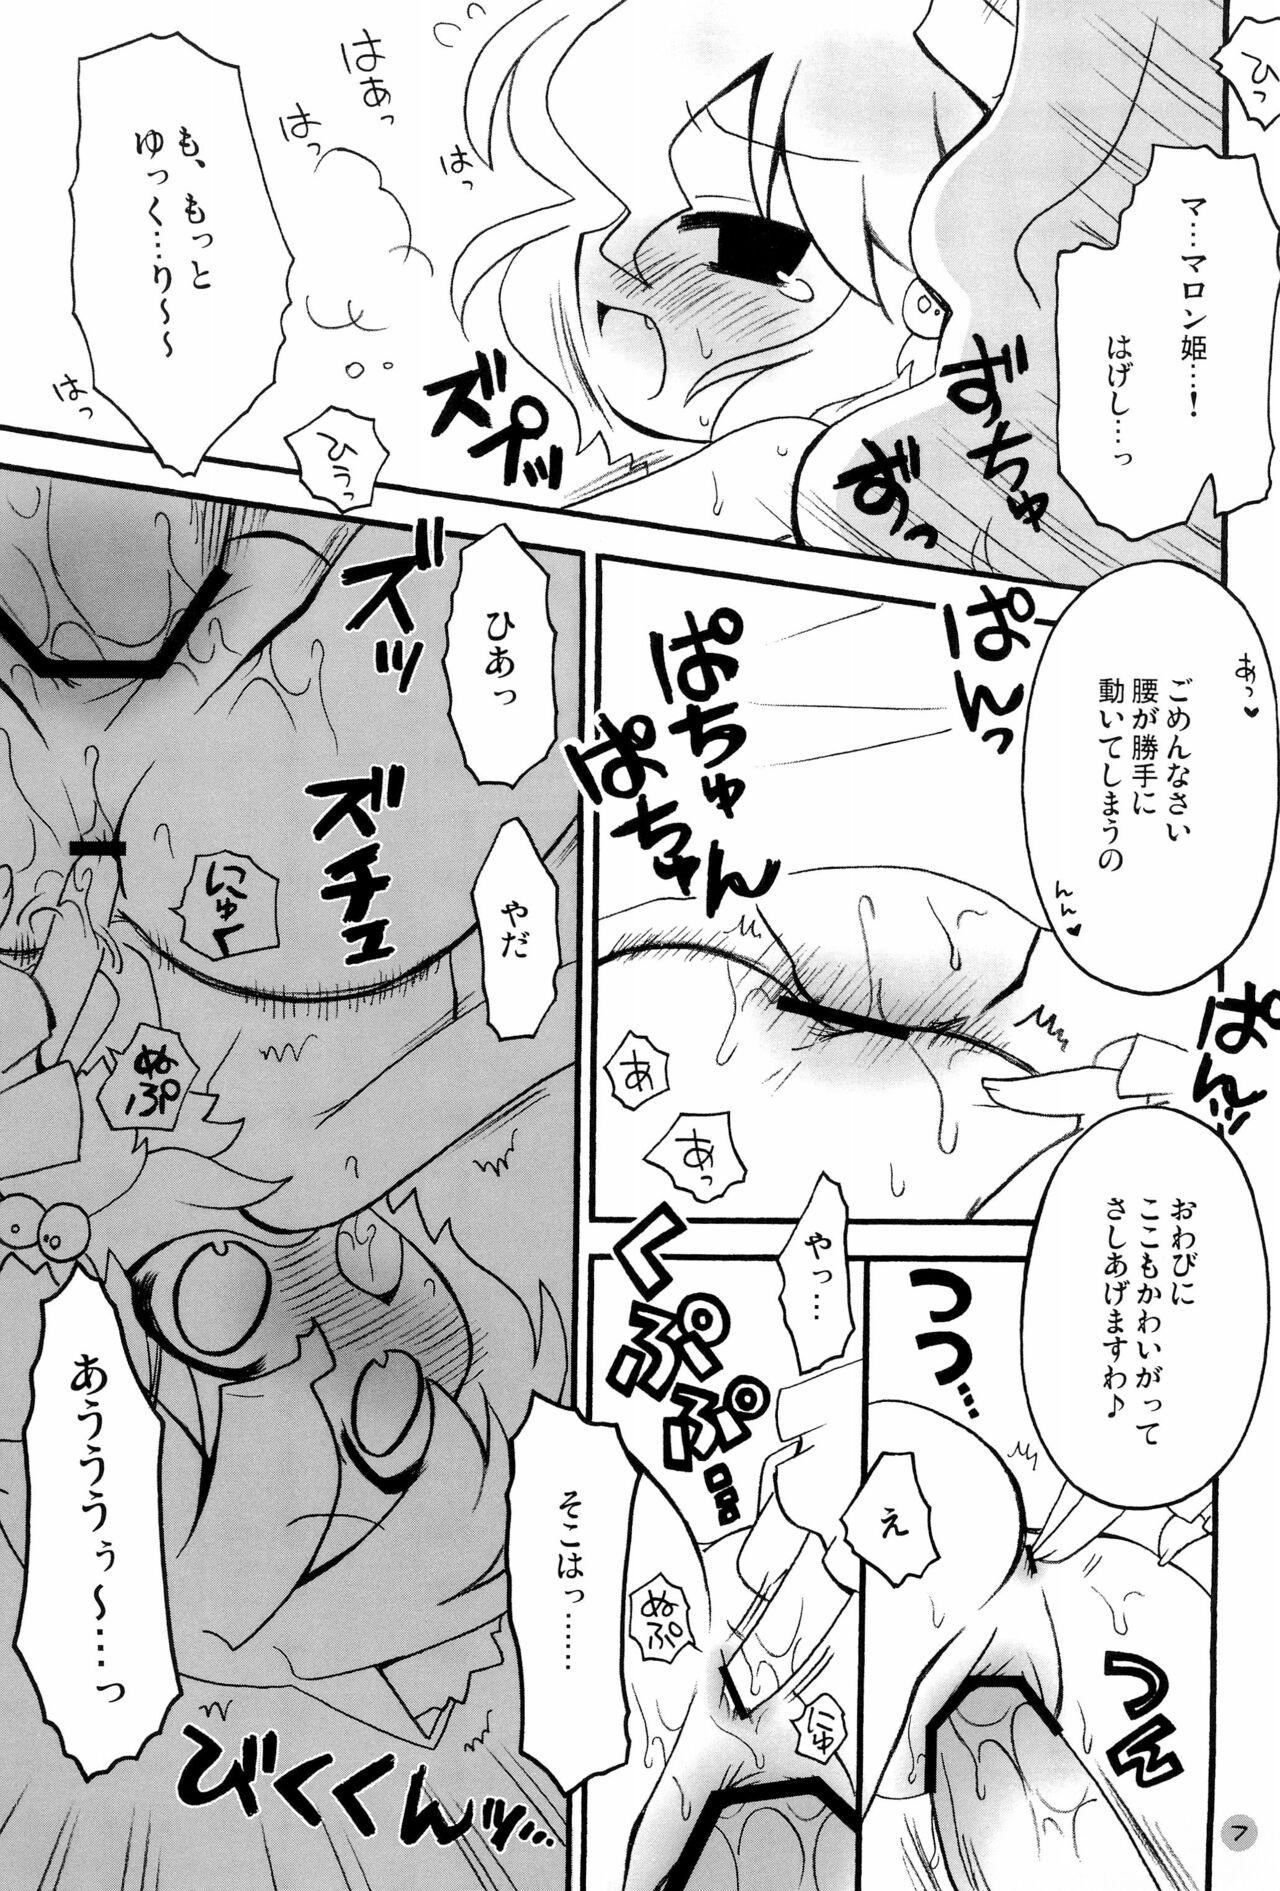 Blacks Harumomo no Tsubomi - 7th dragon Sex - Page 7